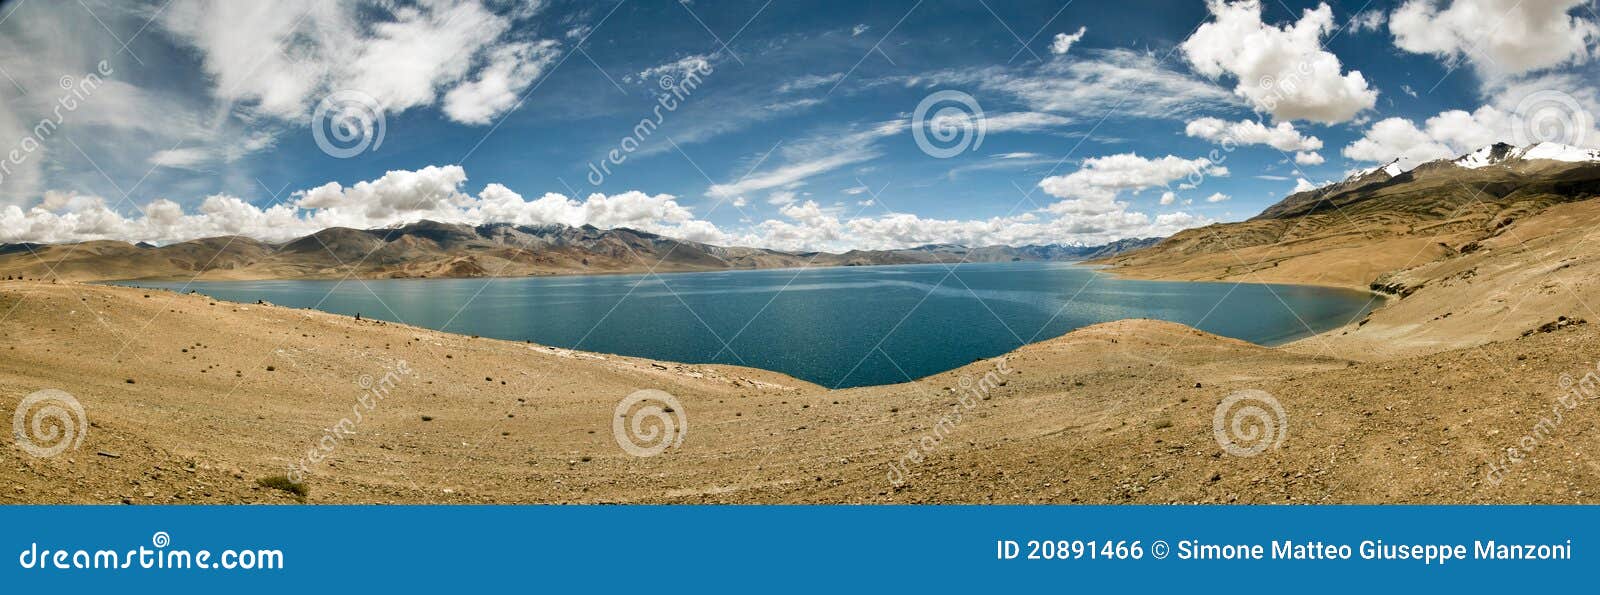 tso-moriri lake in ladakh, india